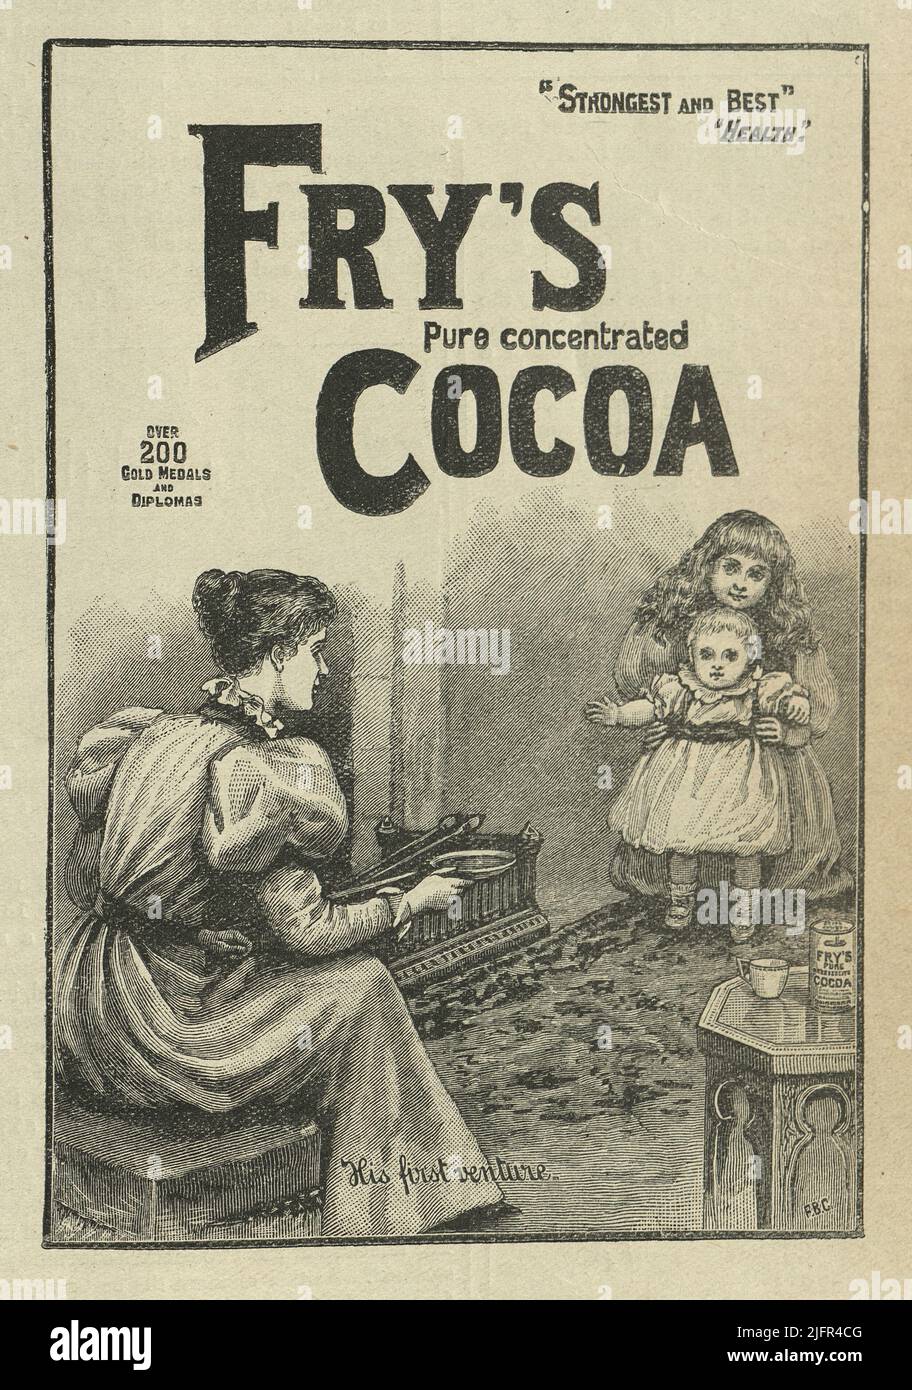 Anuncio victoriano para Fry's Cocoa, 1890s, 19th ª publicidad del siglo Foto de stock